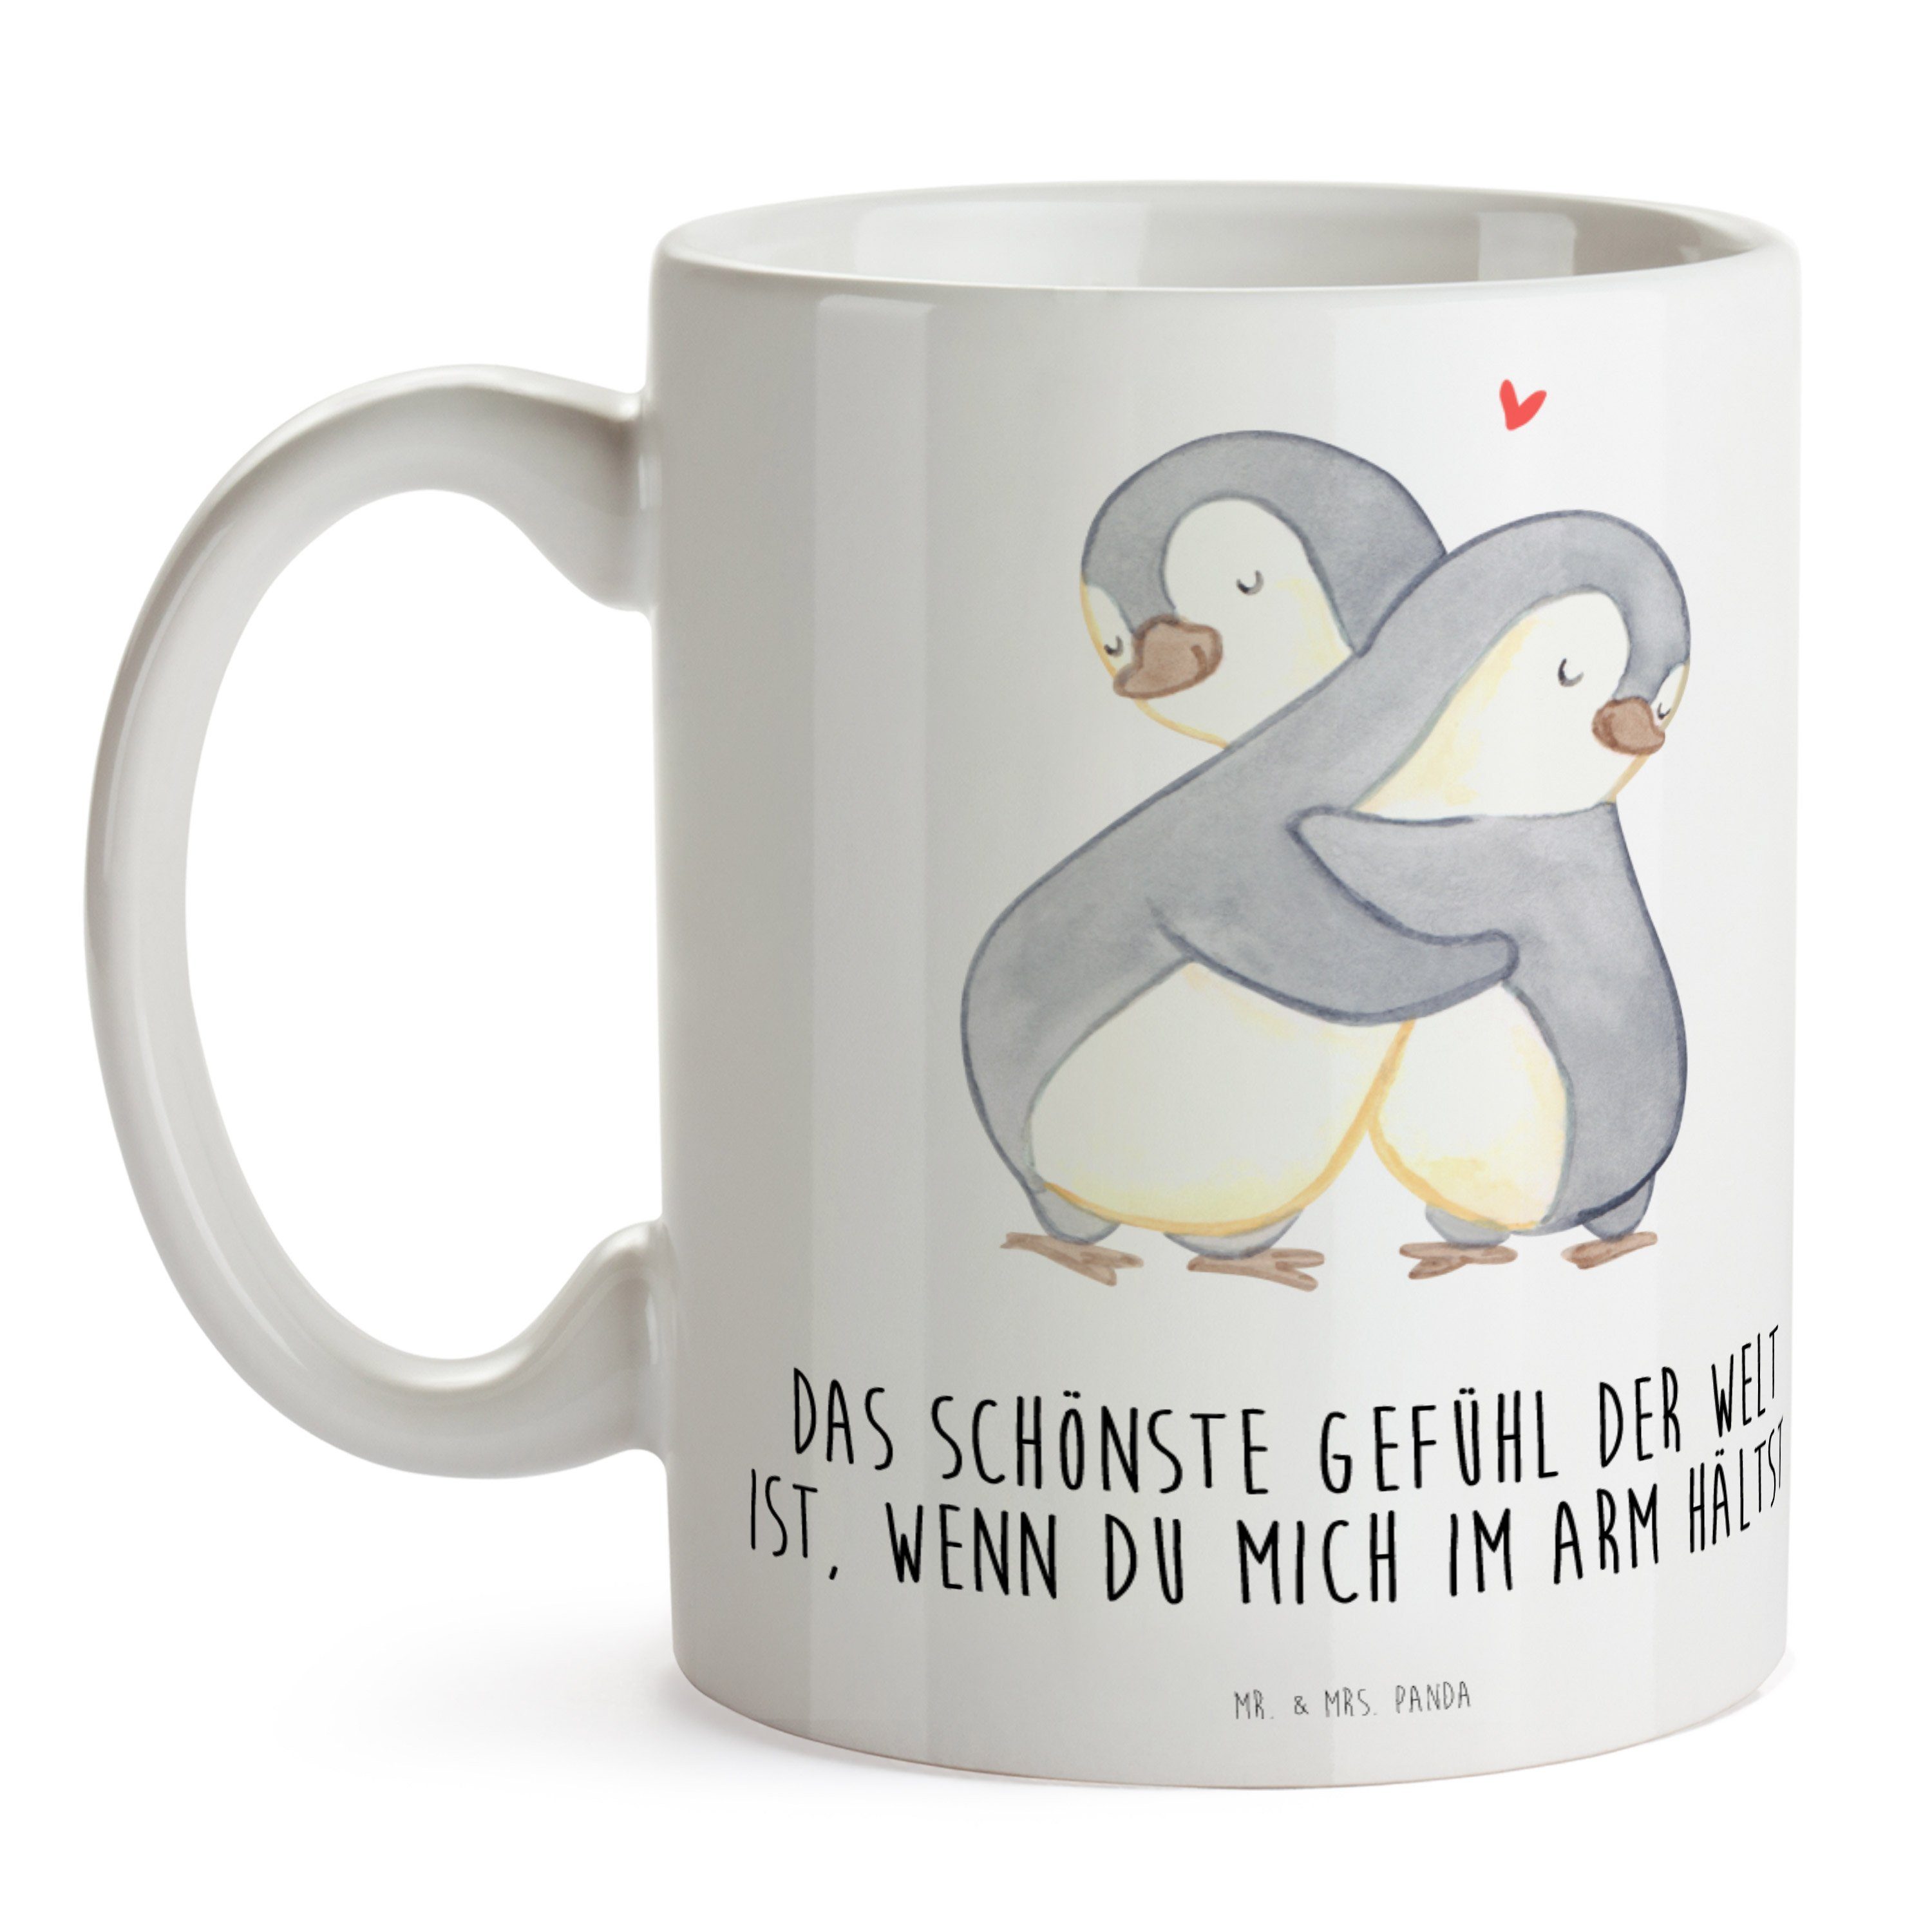 Mr. & Mrs. Panda Tasse für, Hochzeitstag, Weiß Kuscheln - Geschenk, Keramik - Pinguine Kaffeebecher